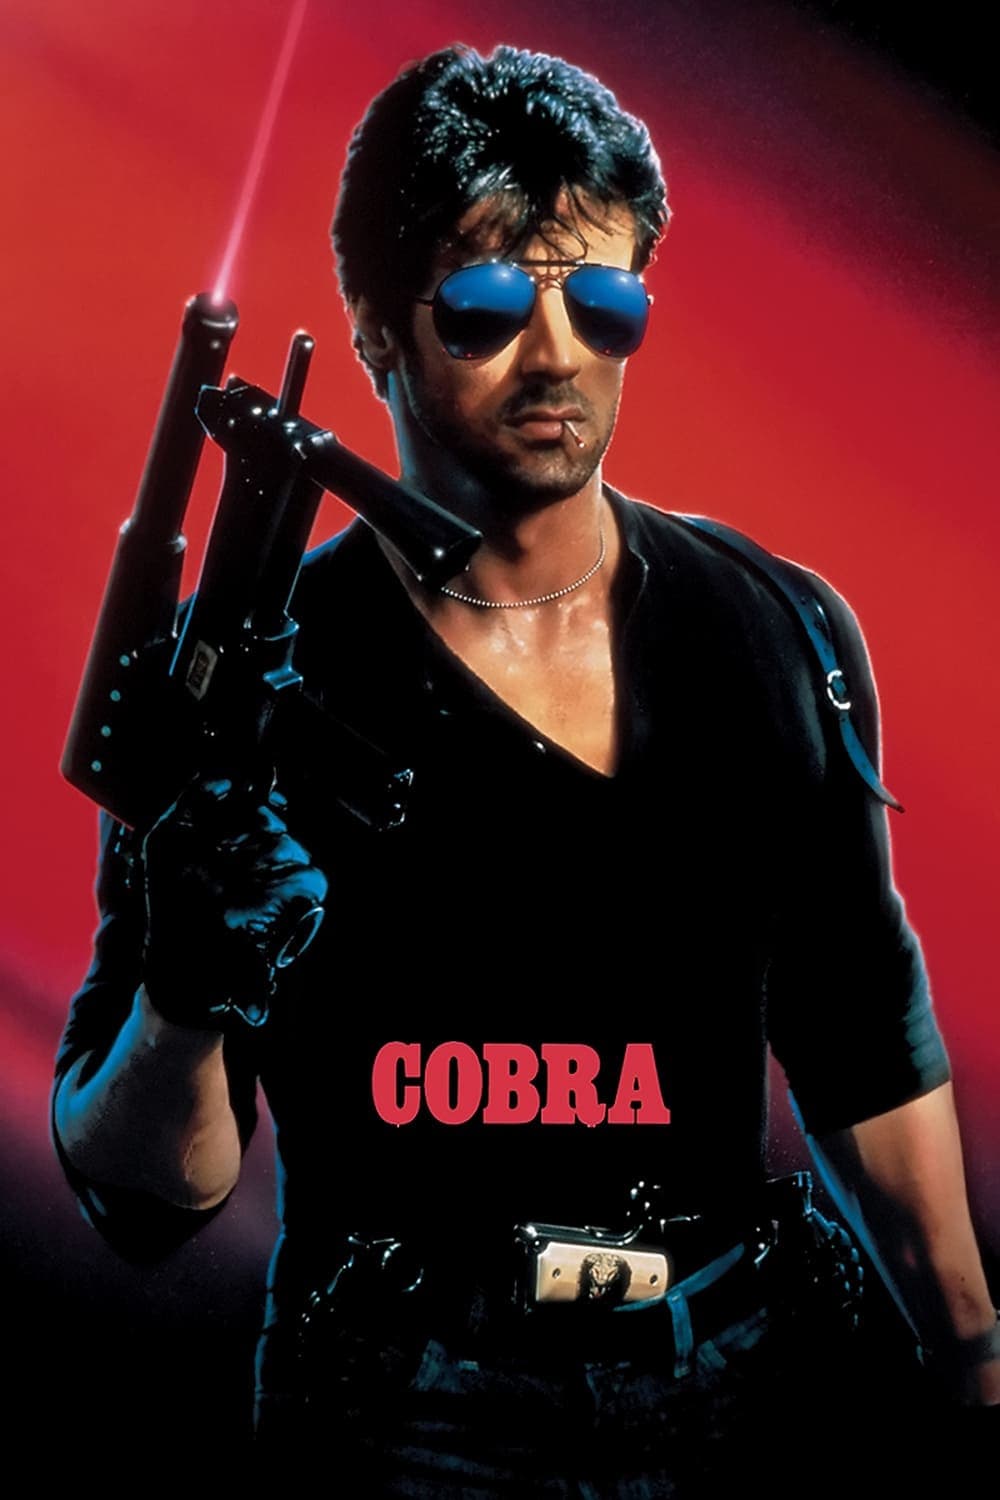 Stallone: Cobra